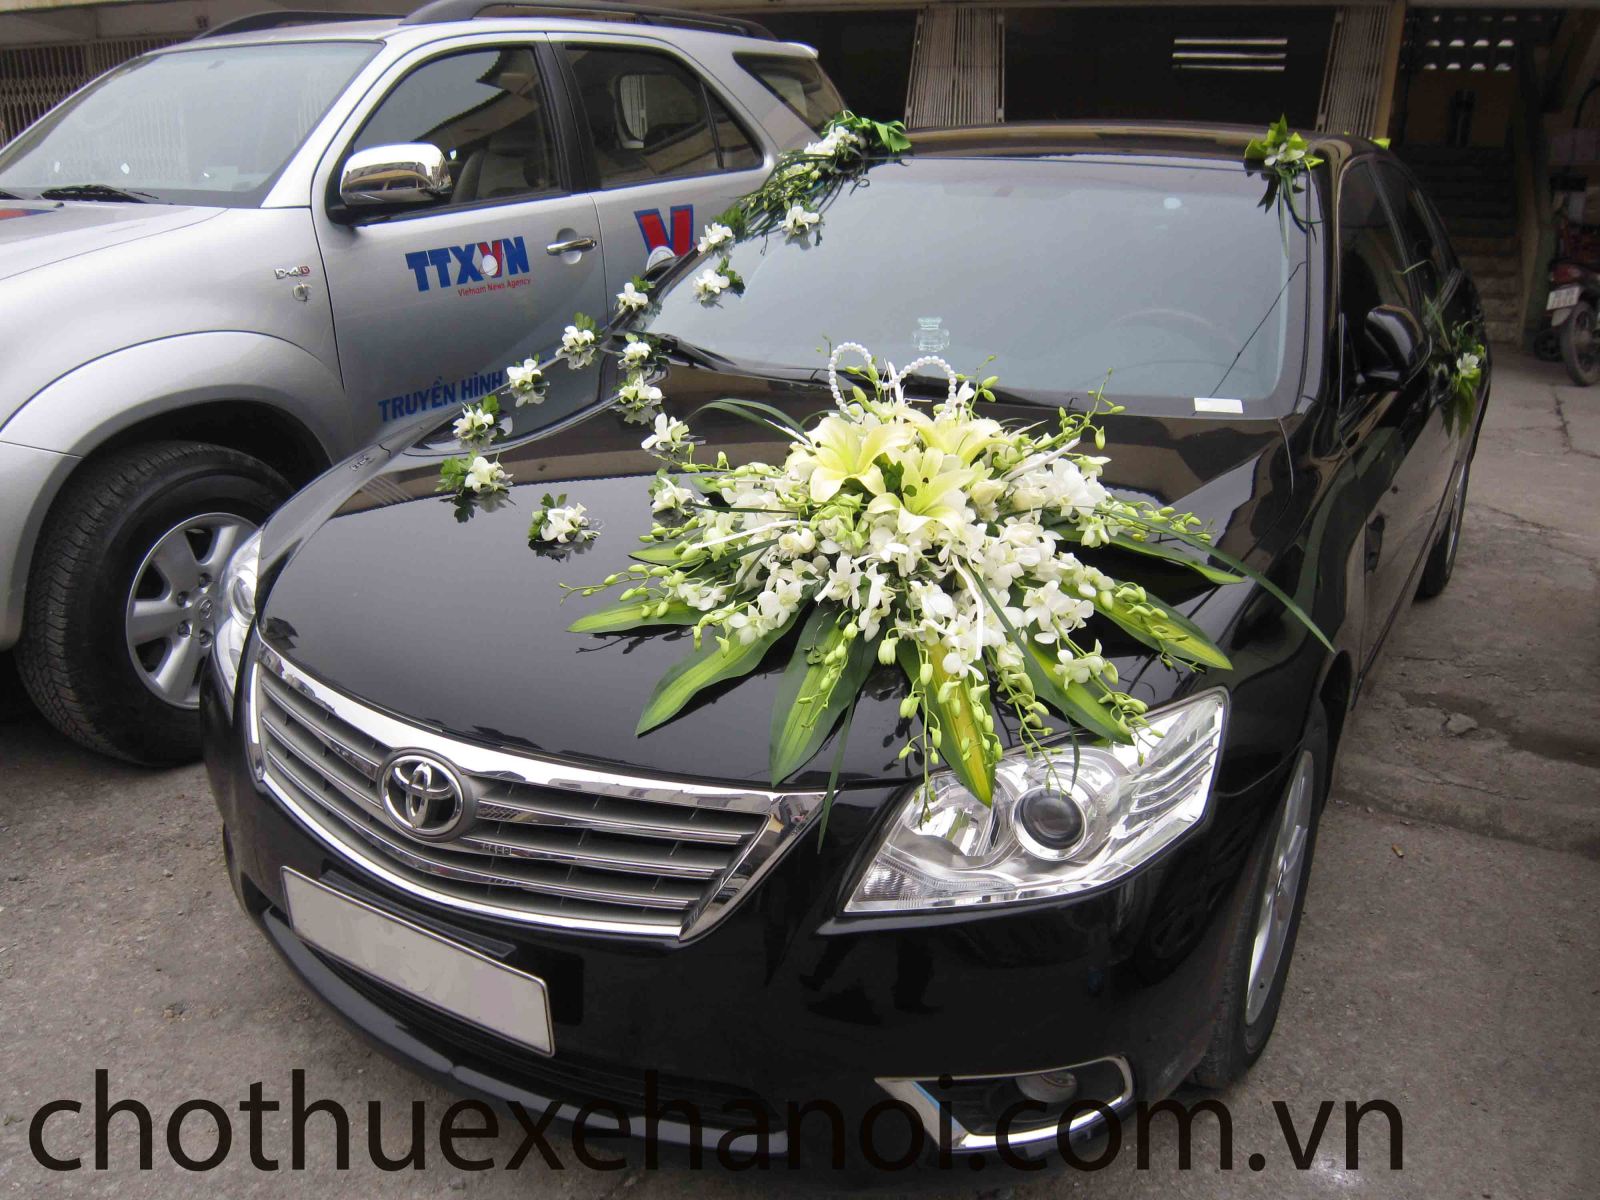 Cho thuê xe cưới tại Hà Nội-cho thuê xe du lịch